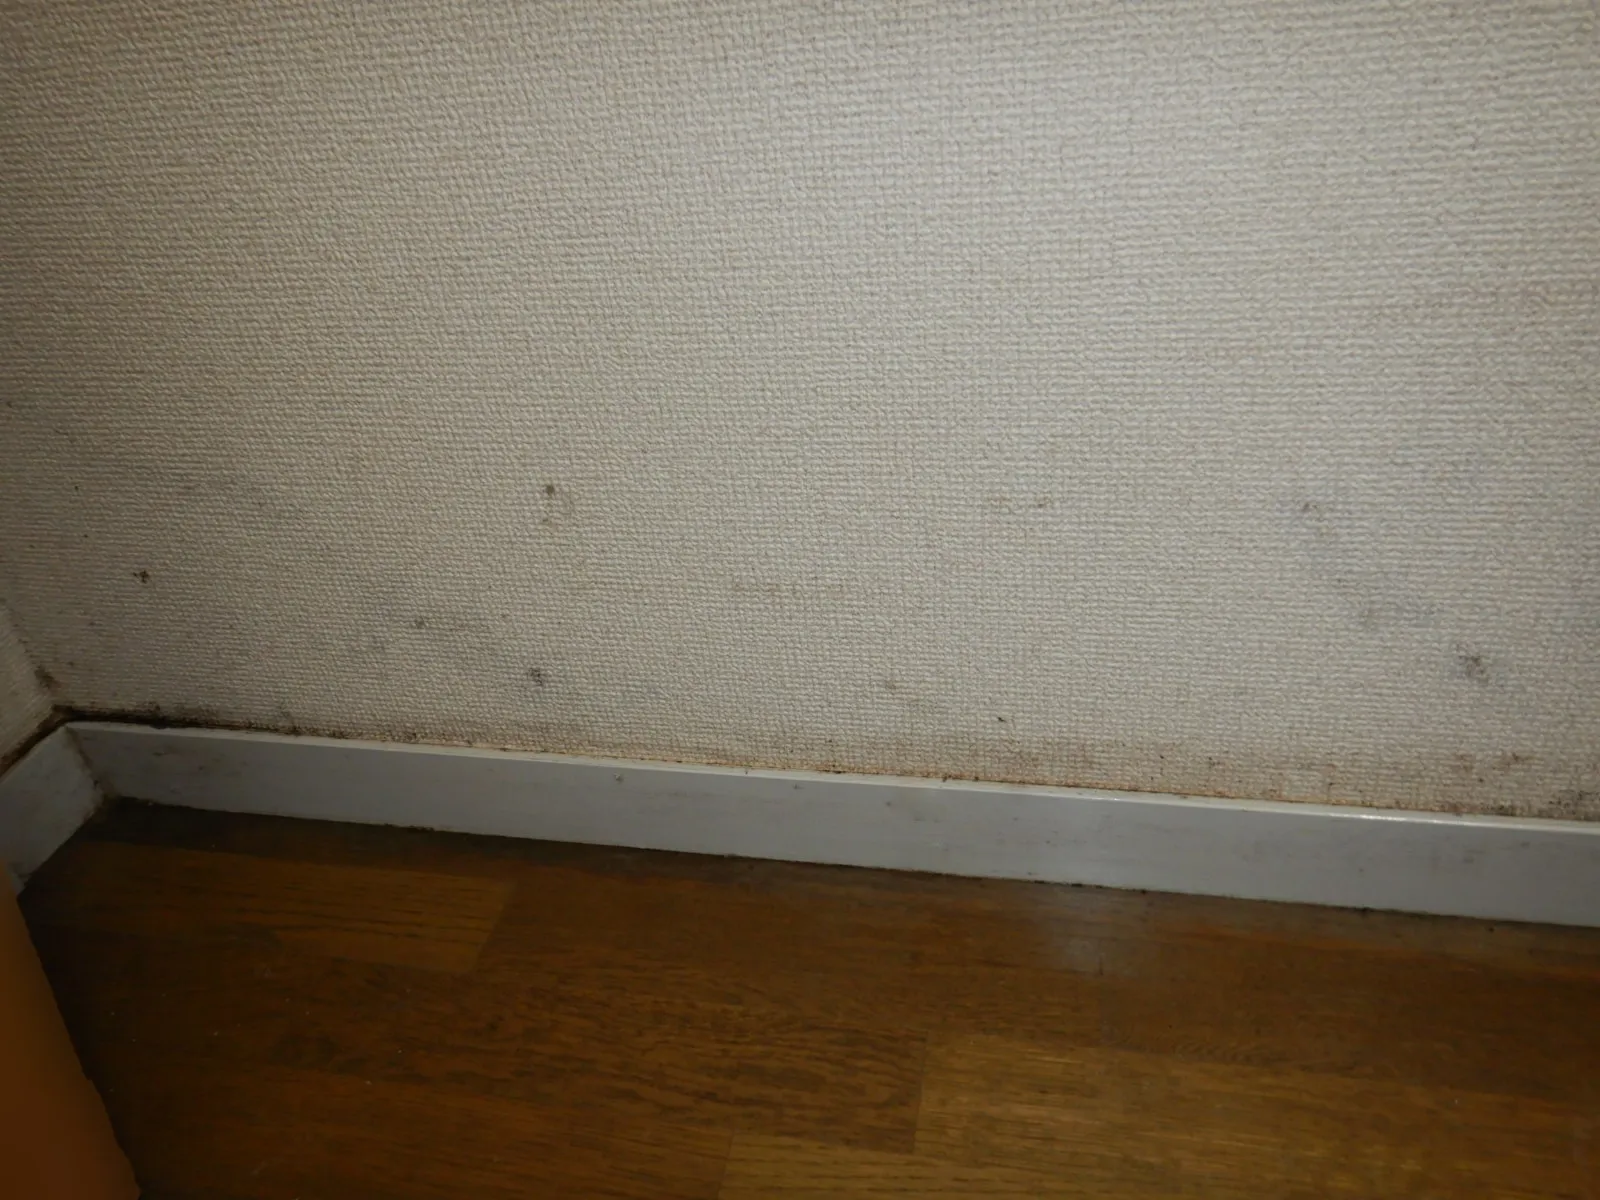 【埼玉・東京】カビ臭い部屋で生活している自覚はありますか